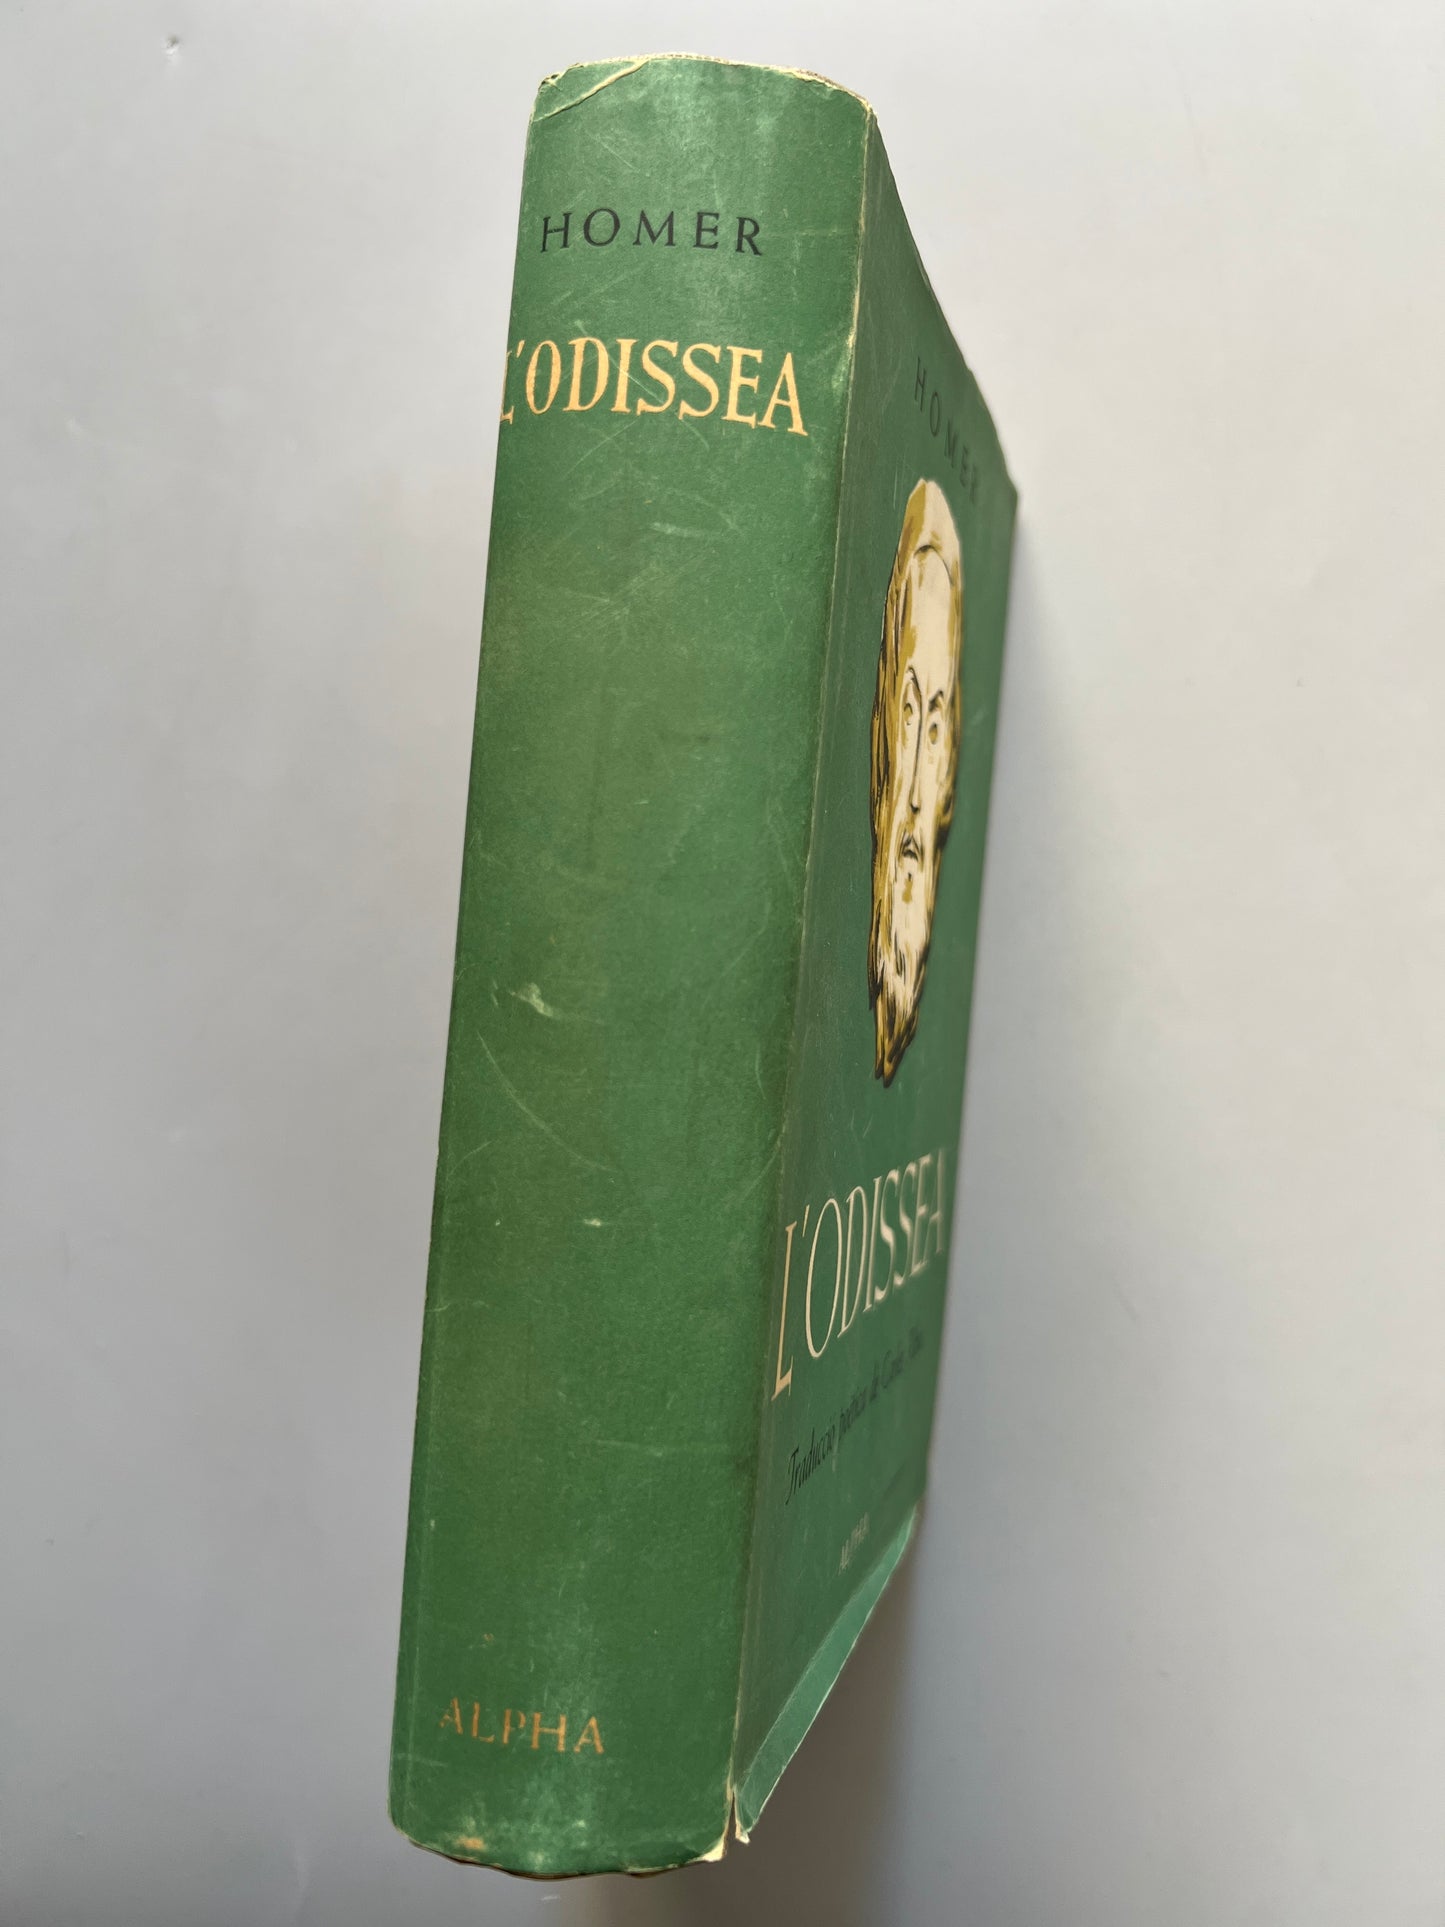 L'Odissea, Homer. Traducción de Carles Riba - Editorial Alpha, 1953